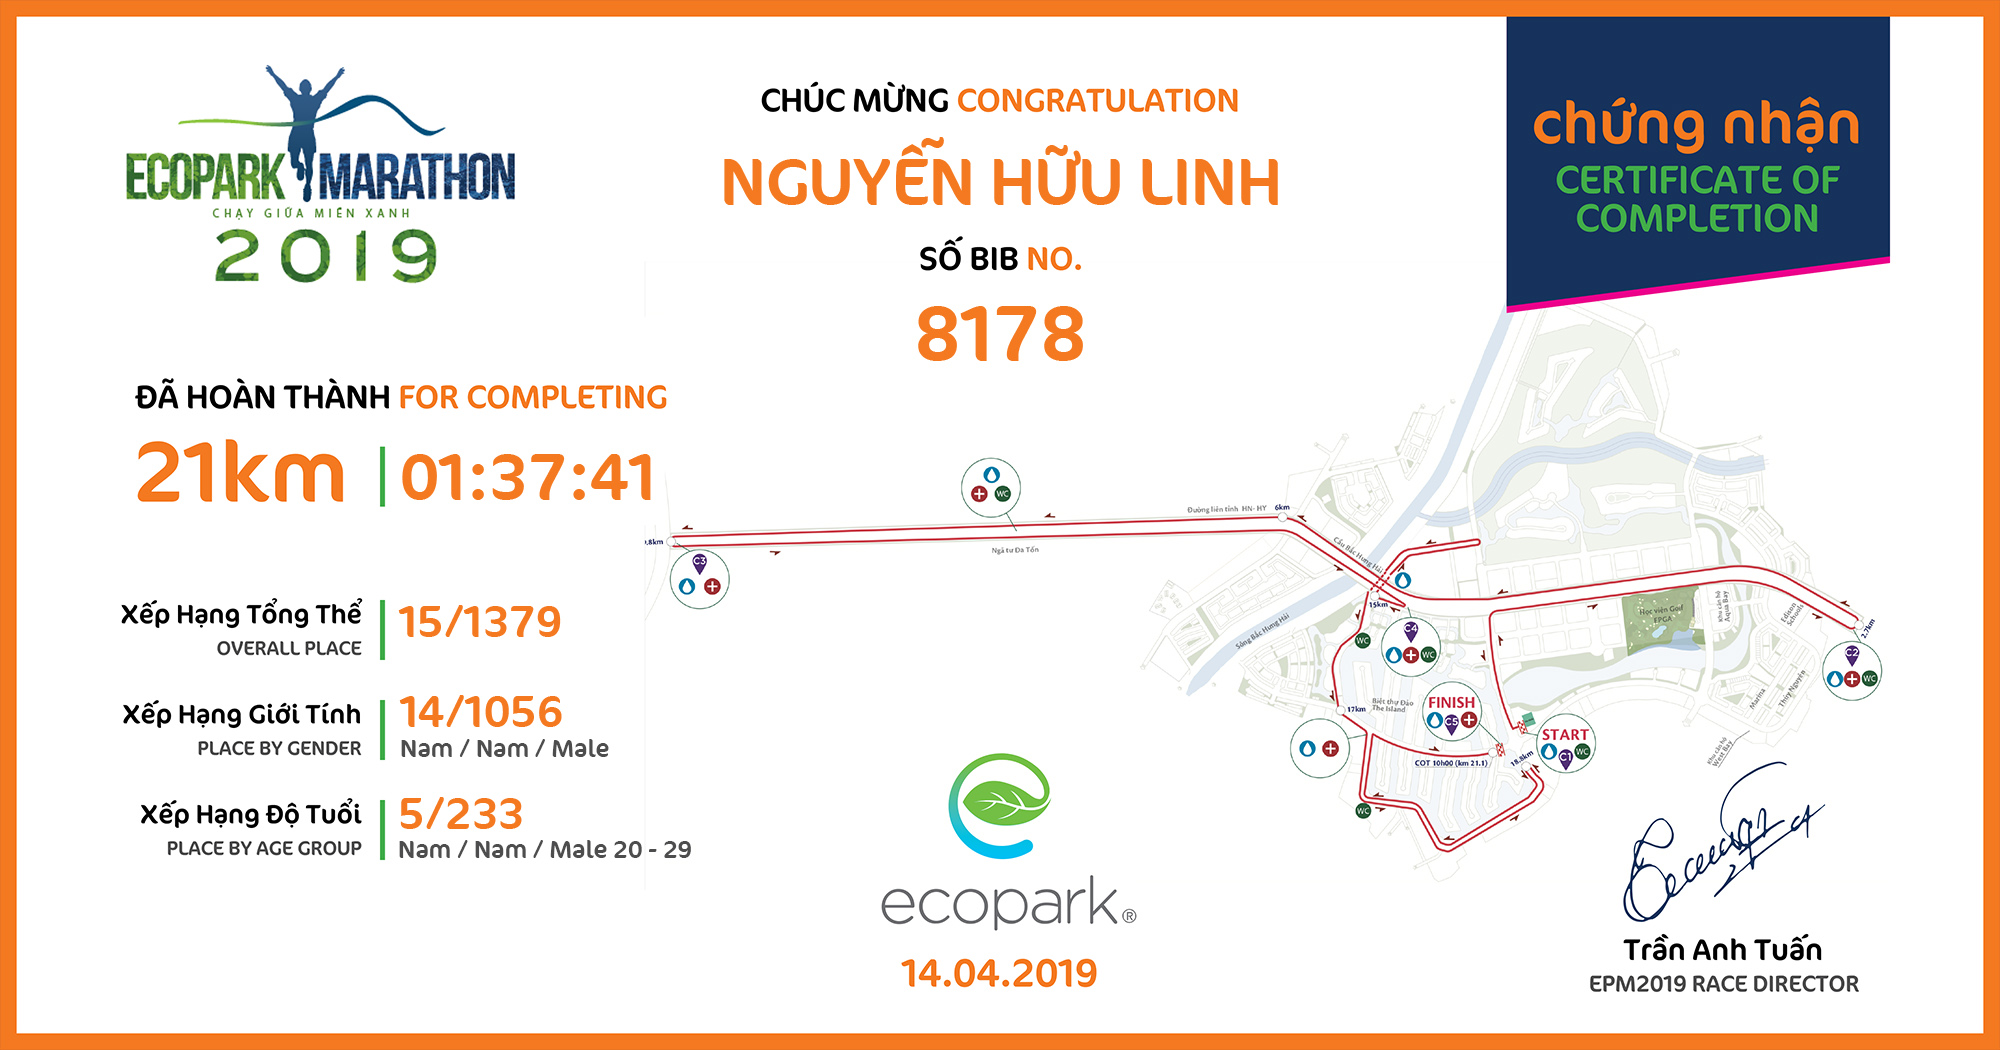 8178 - Nguyễn Hữu Linh